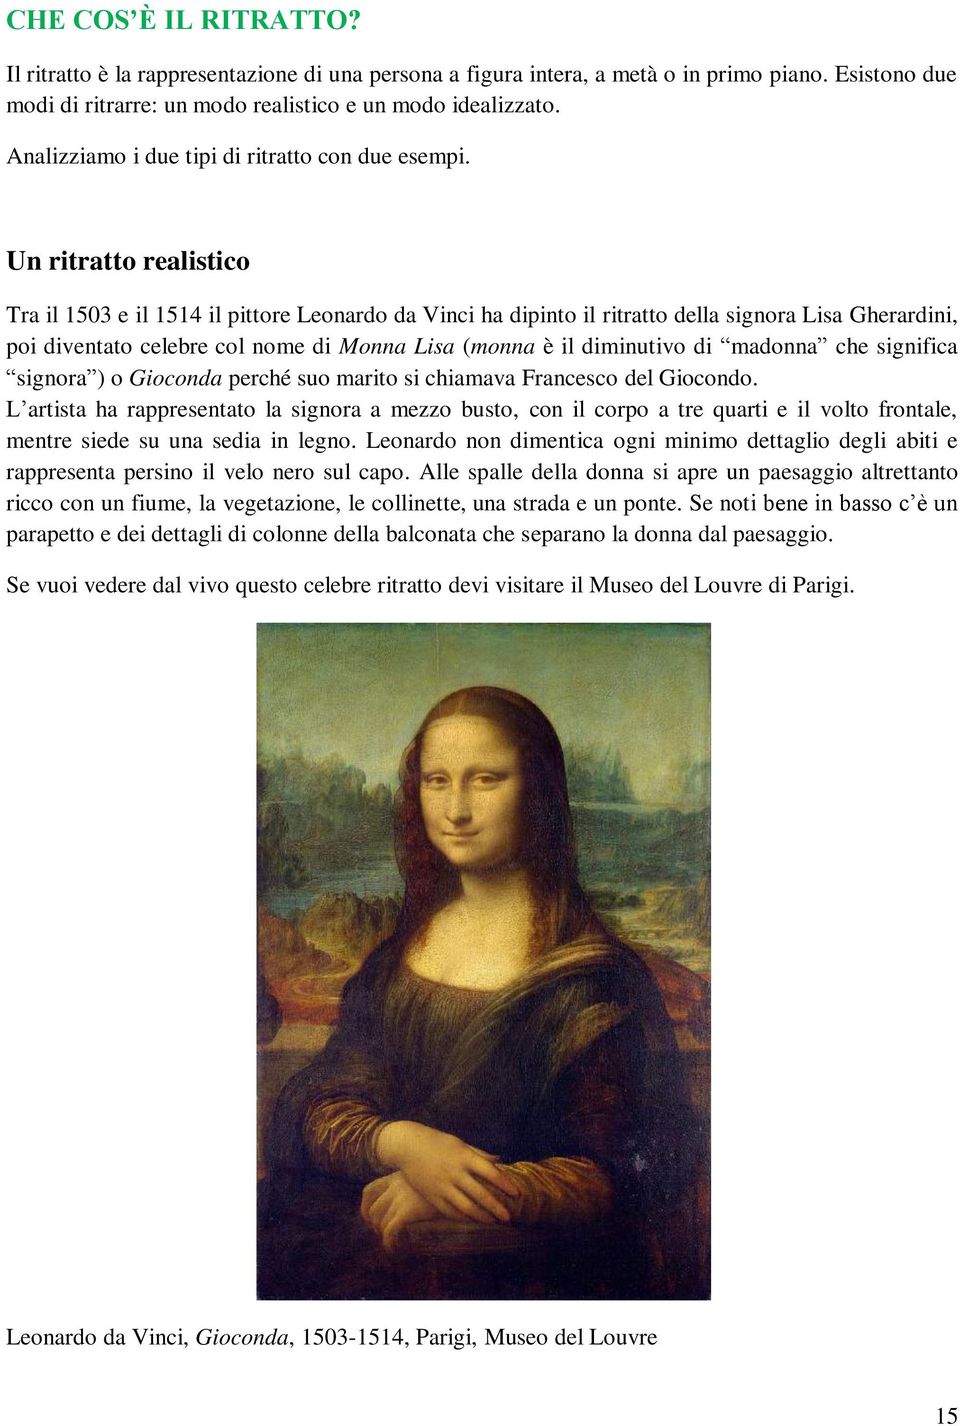 Un ritratto realistico Tra il 1503 e il 1514 il pittore Leonardo da Vinci ha dipinto il ritratto della signora Lisa Gherardini, poi diventato celebre col nome di Monna Lisa (monna è il diminutivo di